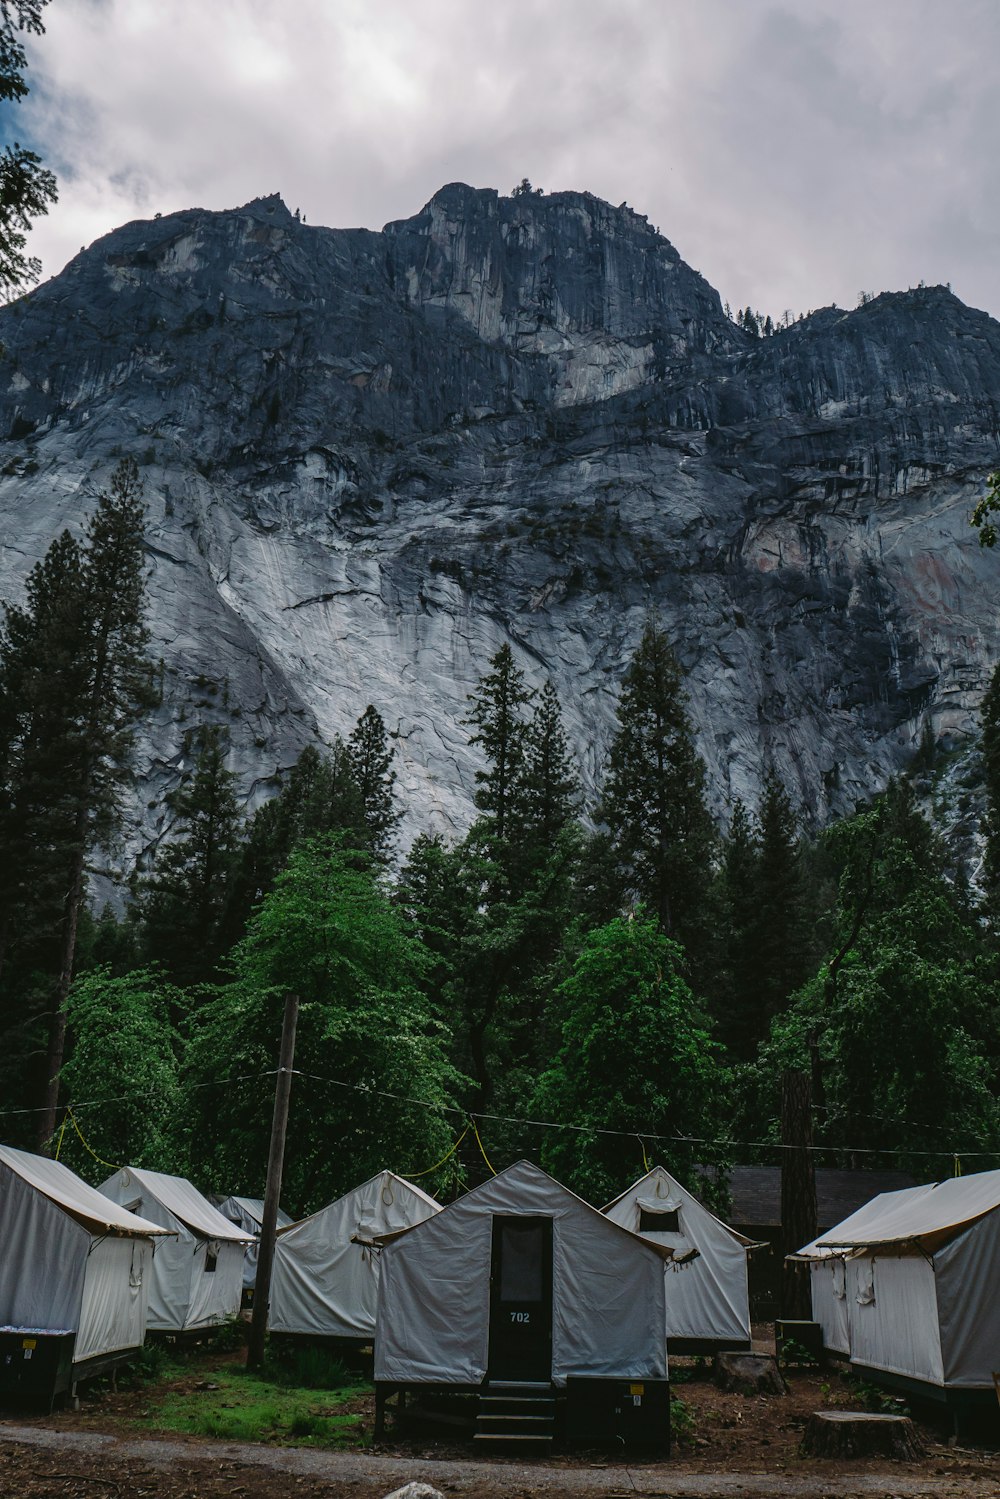 Guarda la fotografia delle tende della Casa Bianca vicino agli alberi sotto la montagna nera e grigia